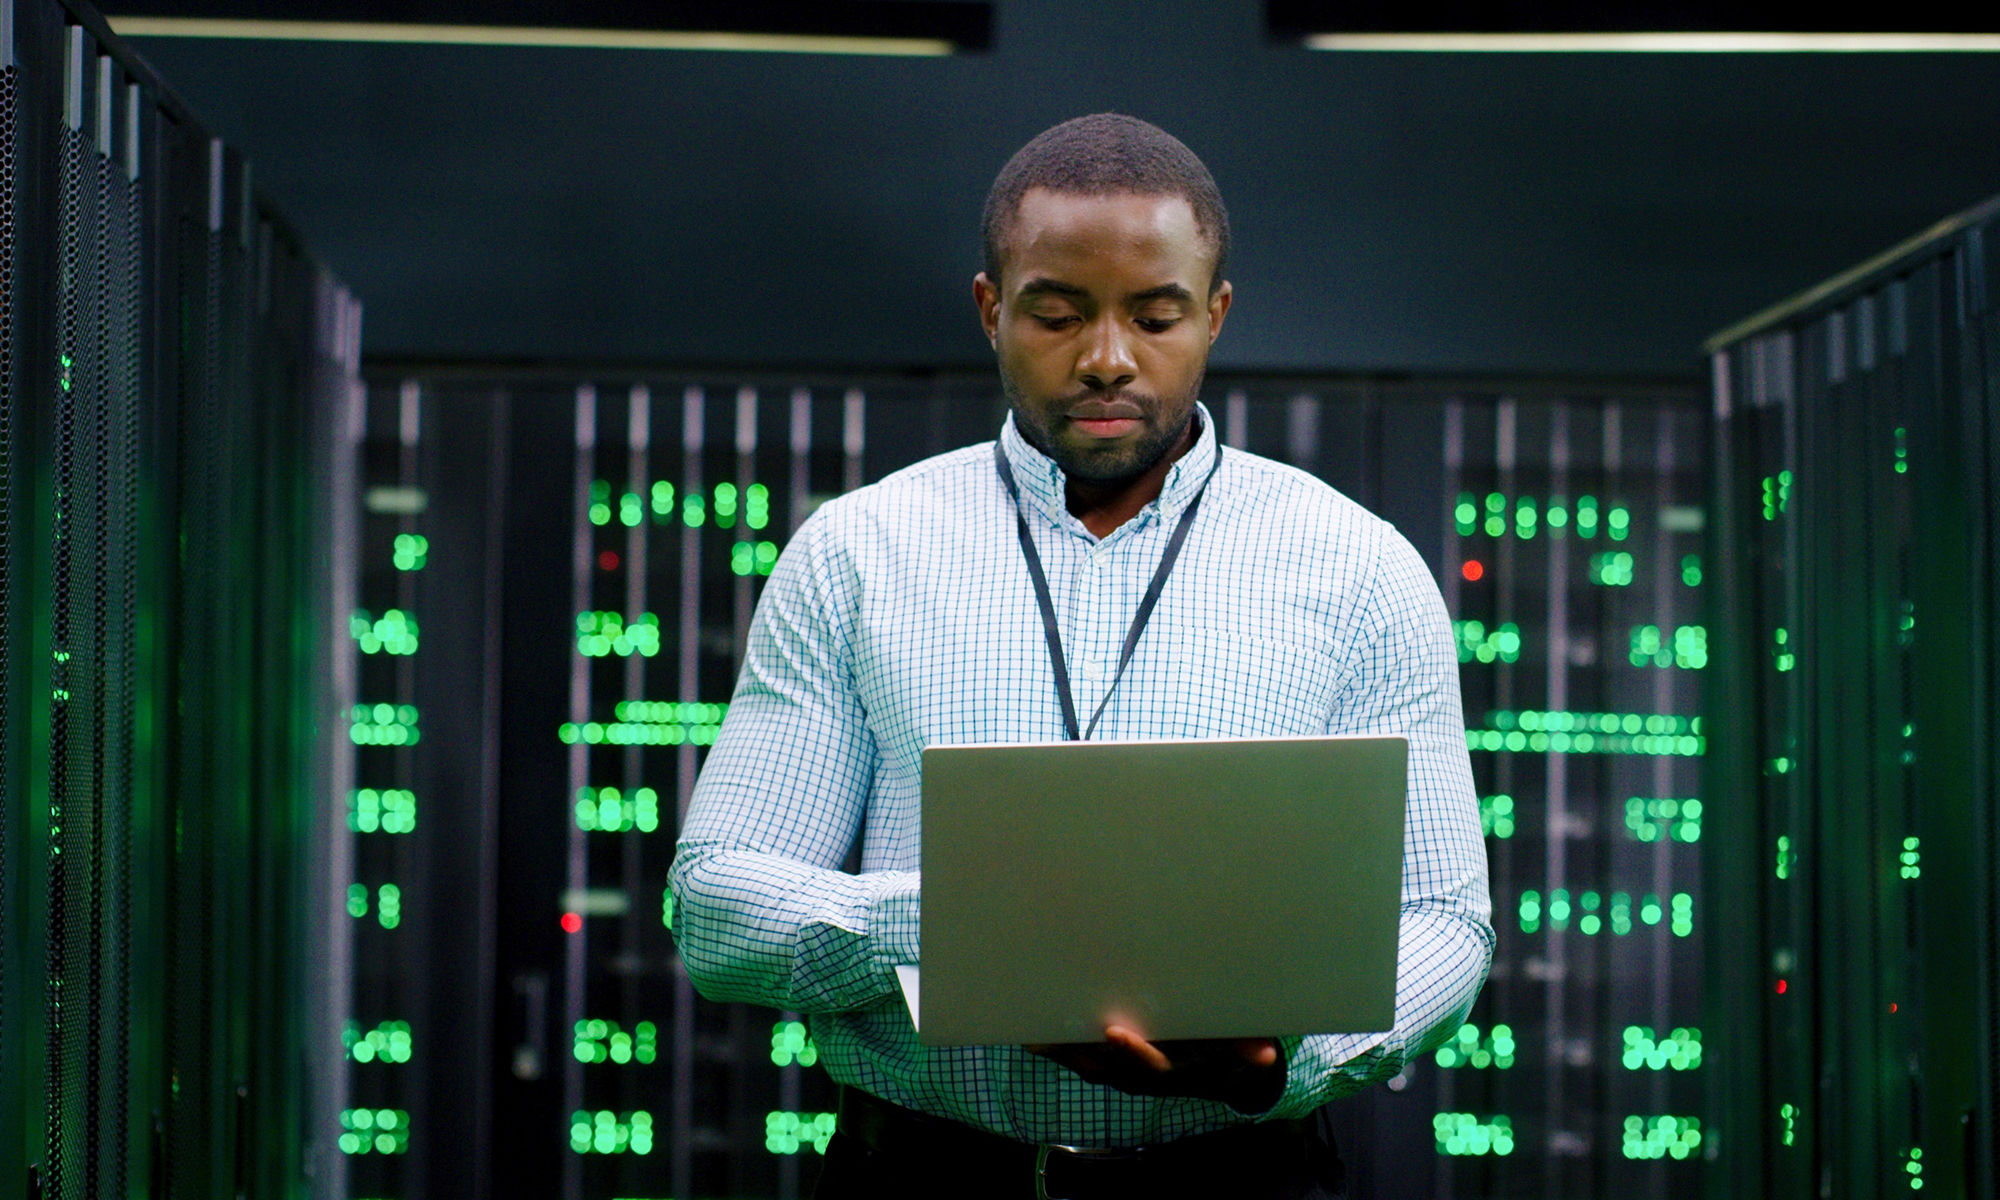 大型資料中心的男性系統管理員在伺服器機房工作時使用筆記型電腦輸入文字。數位操作程式設計。一名男性工程師在資料庫中心線上工作。電信。